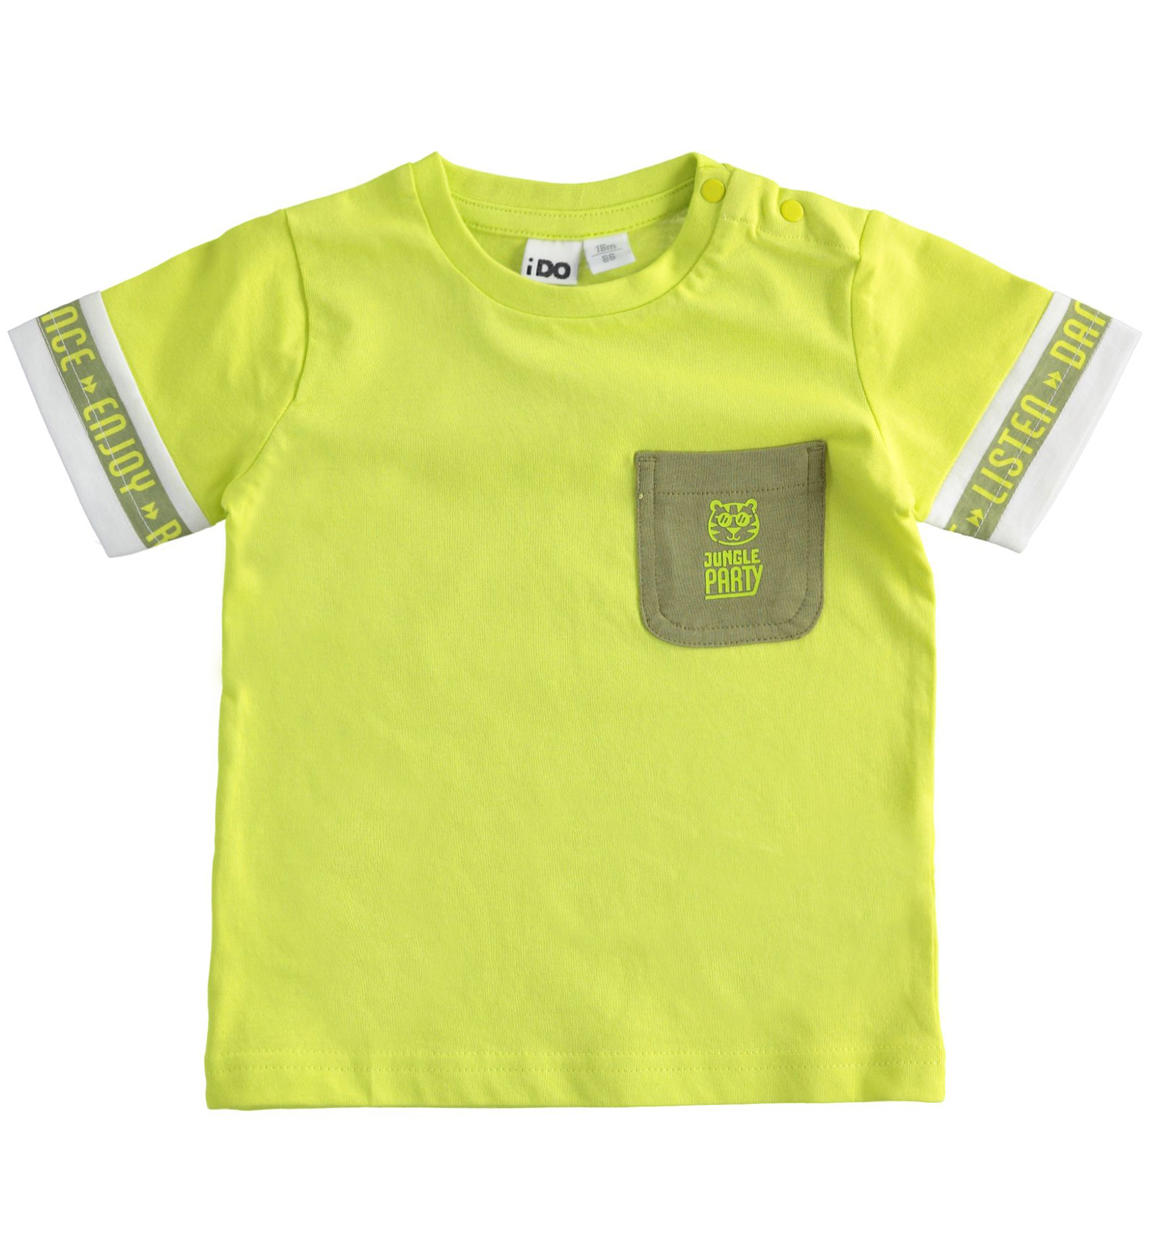 T-shirt bambino 100% cotone con taschino e stampe VERDE iDO